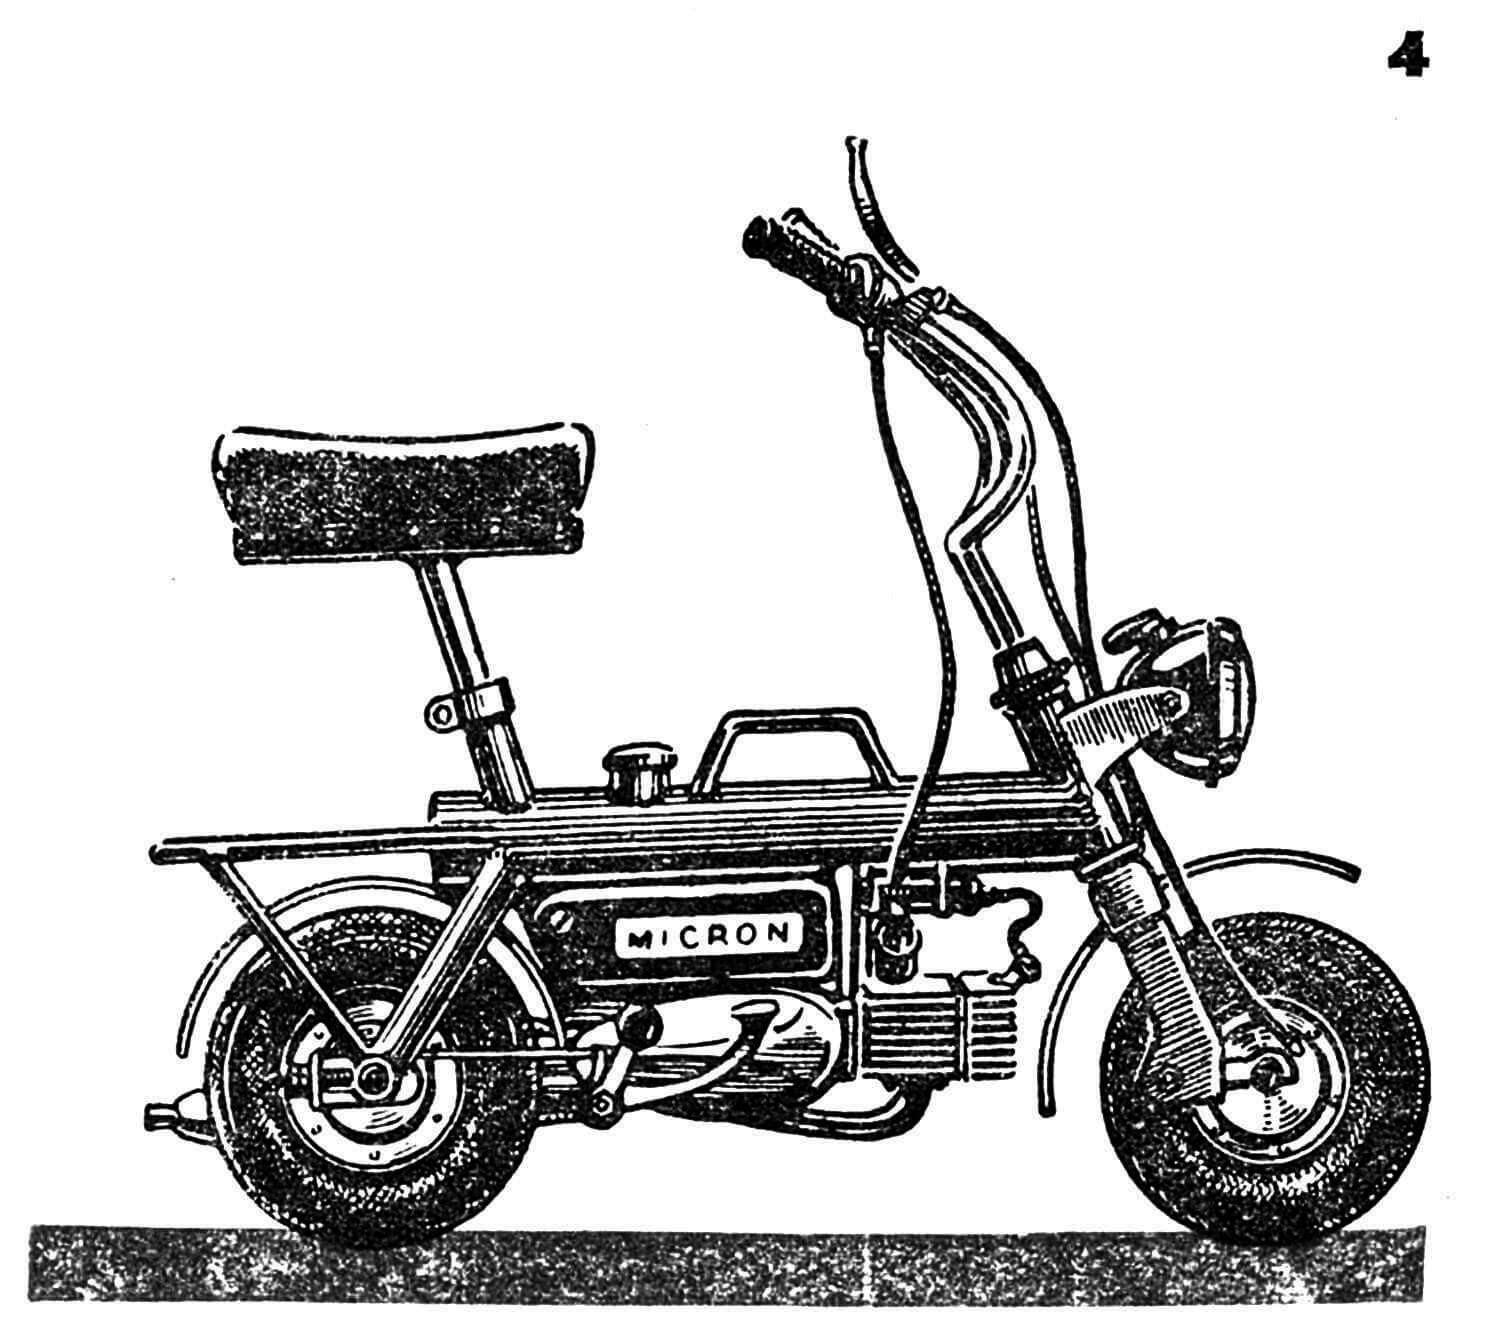 Микромотоцикл любительской постройки (СССР). Упрощенная конструкция, с двигателем от мотоцикла ЯВА-50. Рама самодельная, трубчатая. Центральная часть ее использована в качестве топливного бака. Руль и седло выдвижные, вес машины — 32 кг.